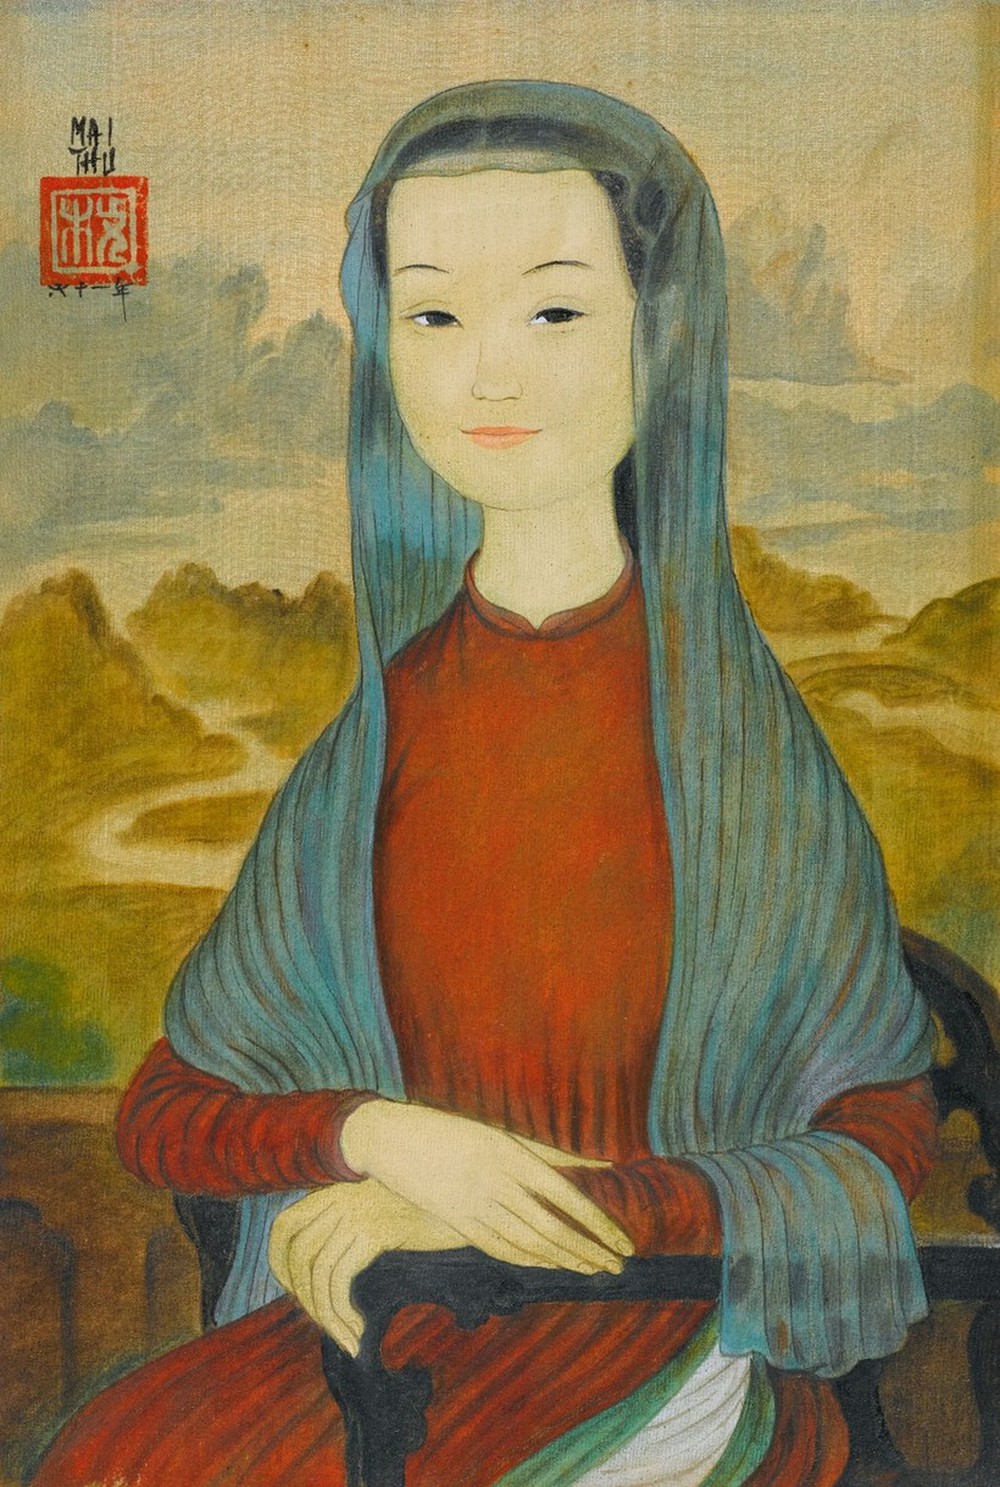 Chuyện ít biết về 3 phiên bản Mona Lisa Việt Nam - Ảnh 1.